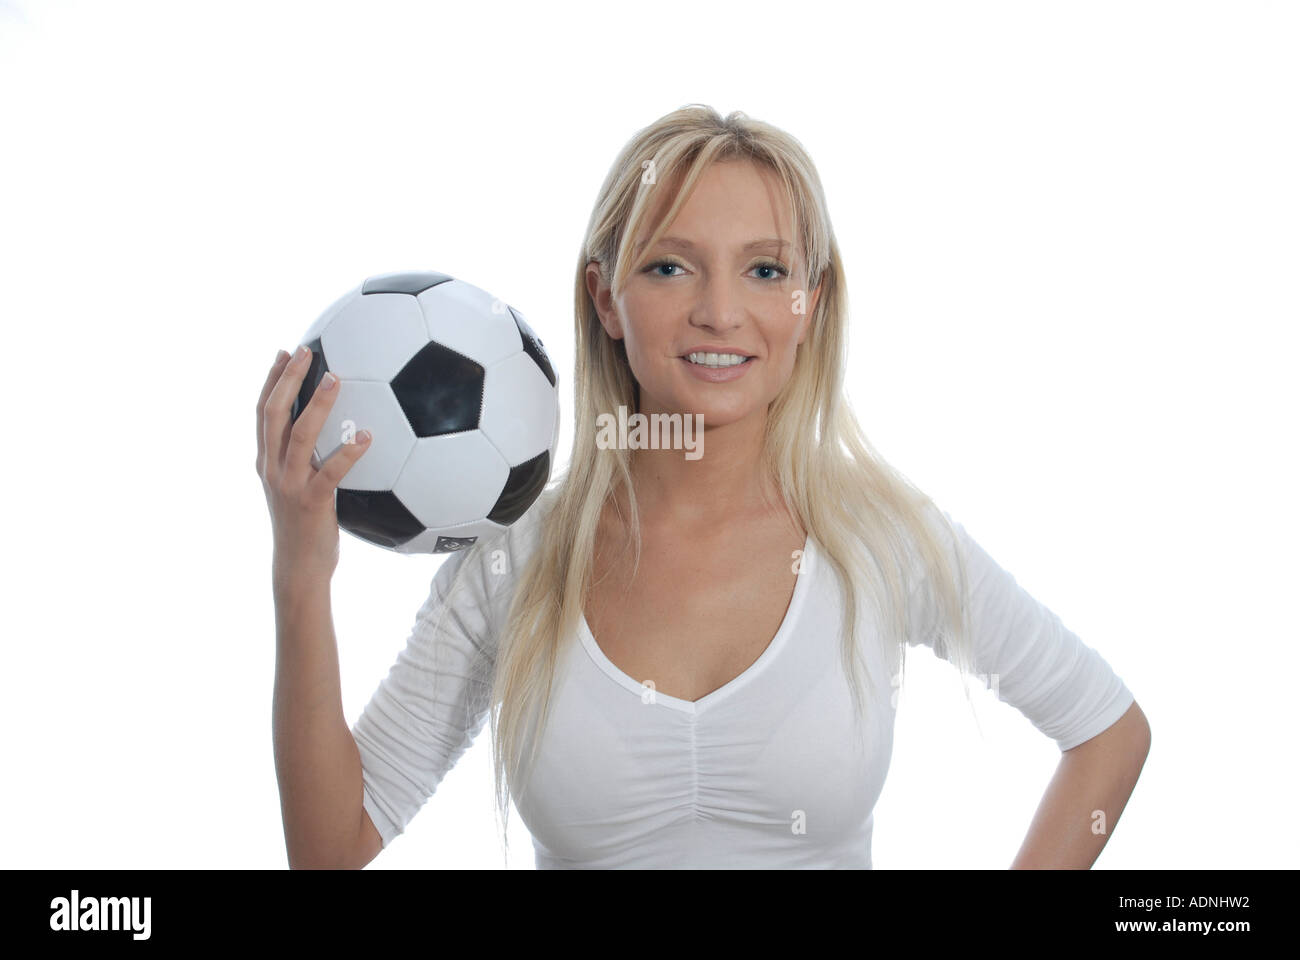 junge Frau blond freundlich laechelt Pose Fussball Stock Photo